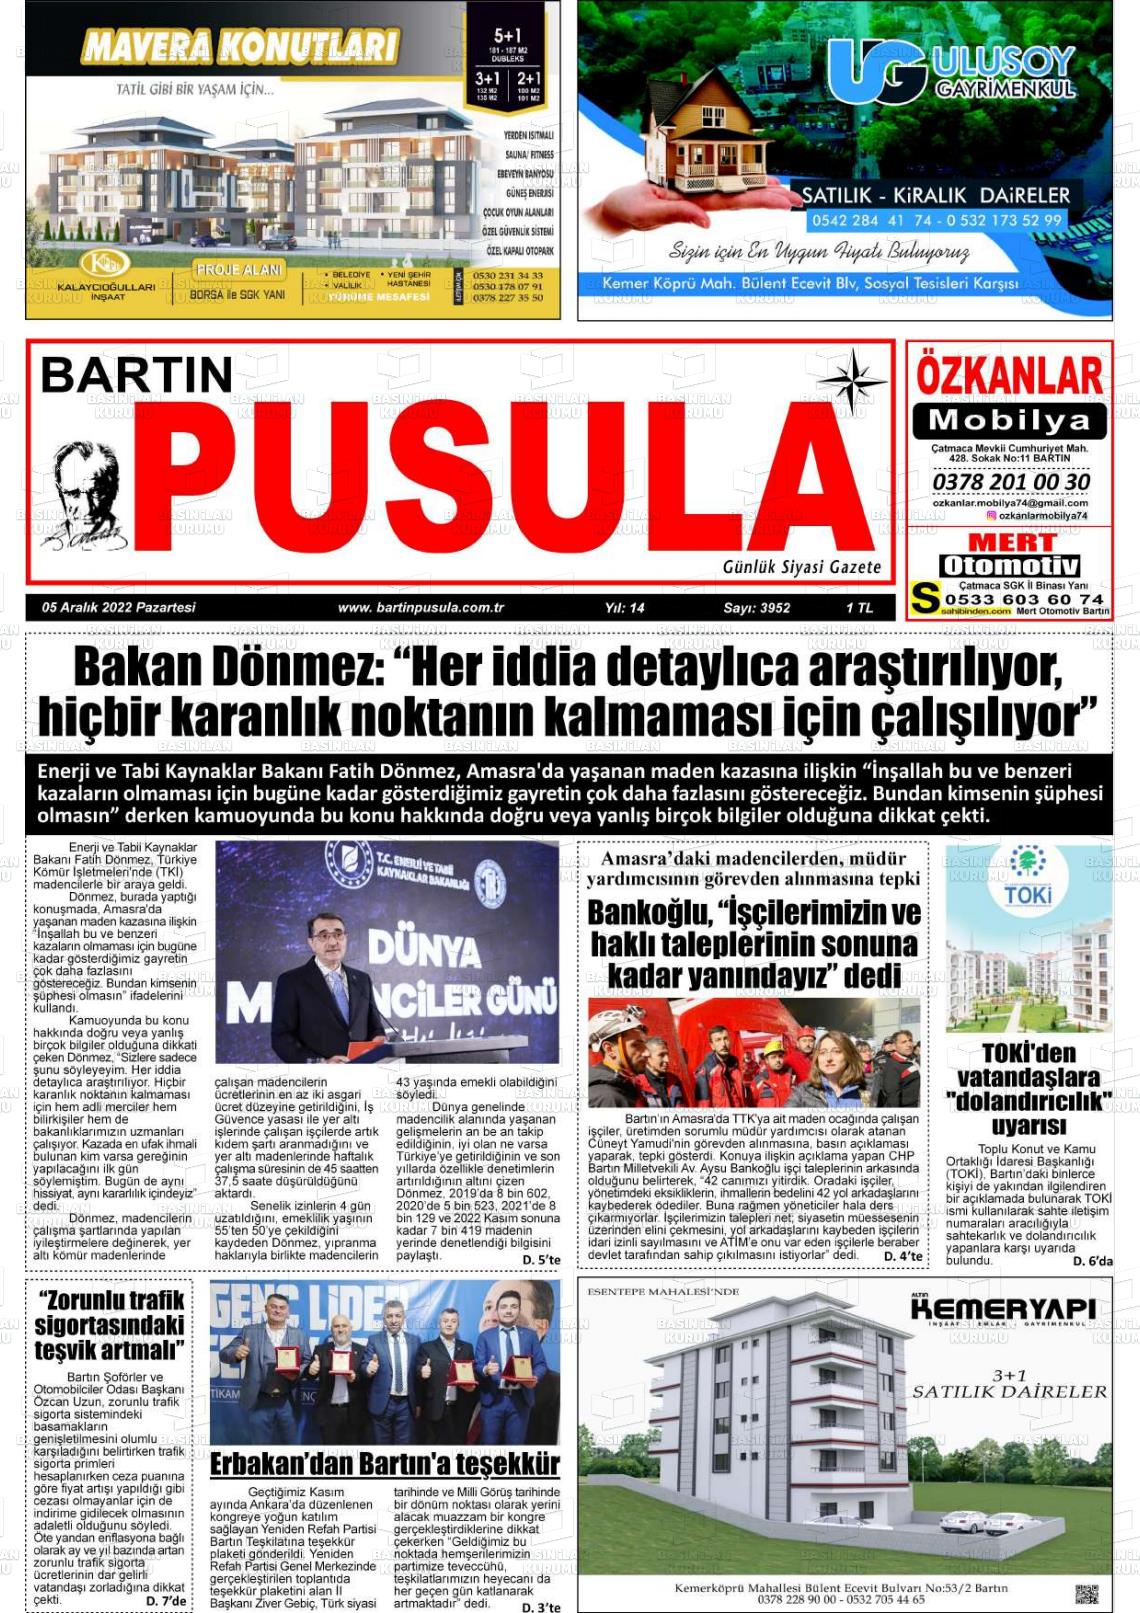 05 Aralık 2022 Bartın Pusula Gazete Manşeti